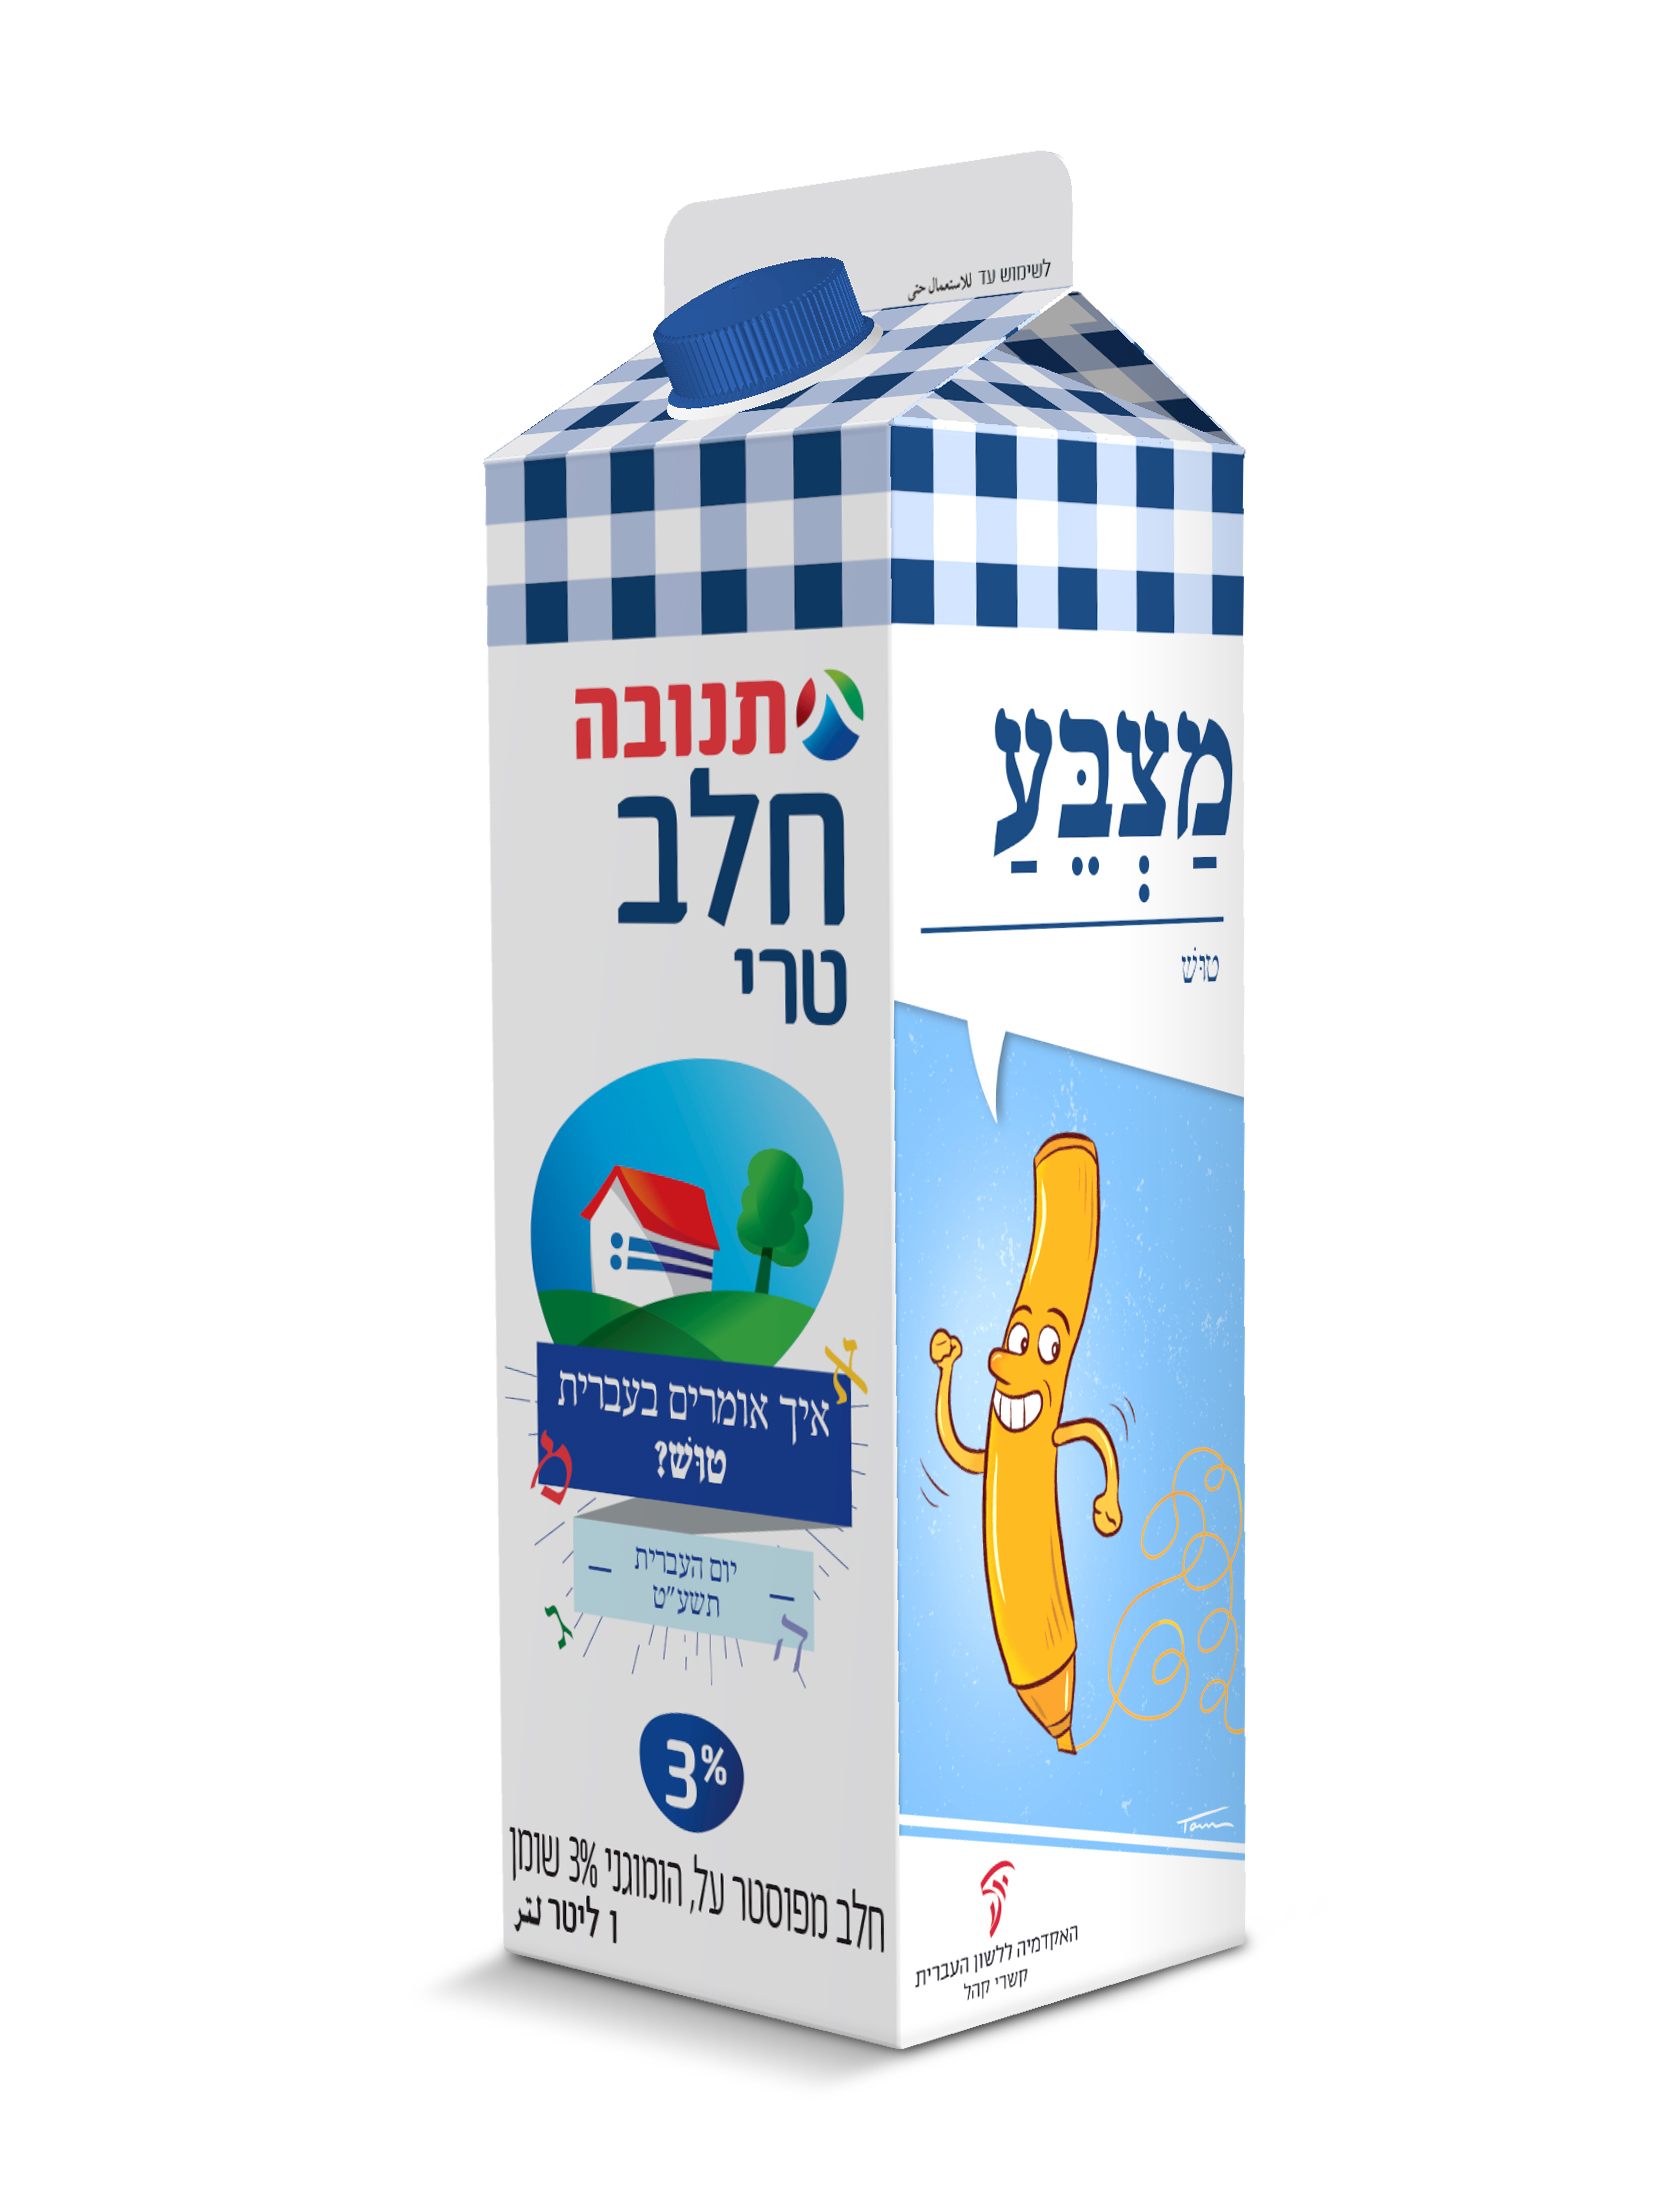 צילום קרטון חלב יום העברית תשע"ט - איור מילה "מצבע"